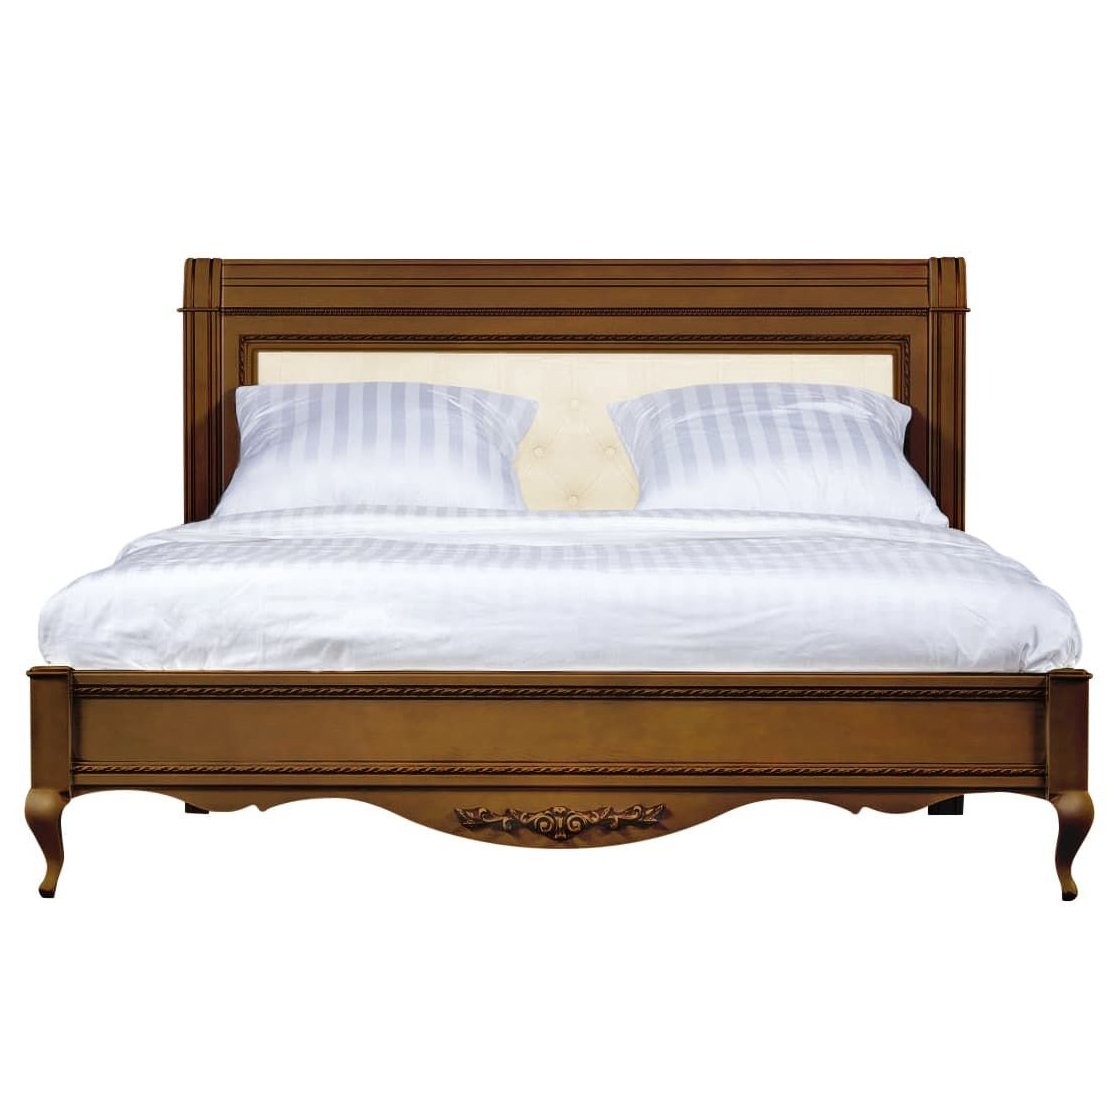 Кровать Timber Неаполь, двуспальная с мягким изголовьем 180x200 см цвет: орех (T-528)T-528